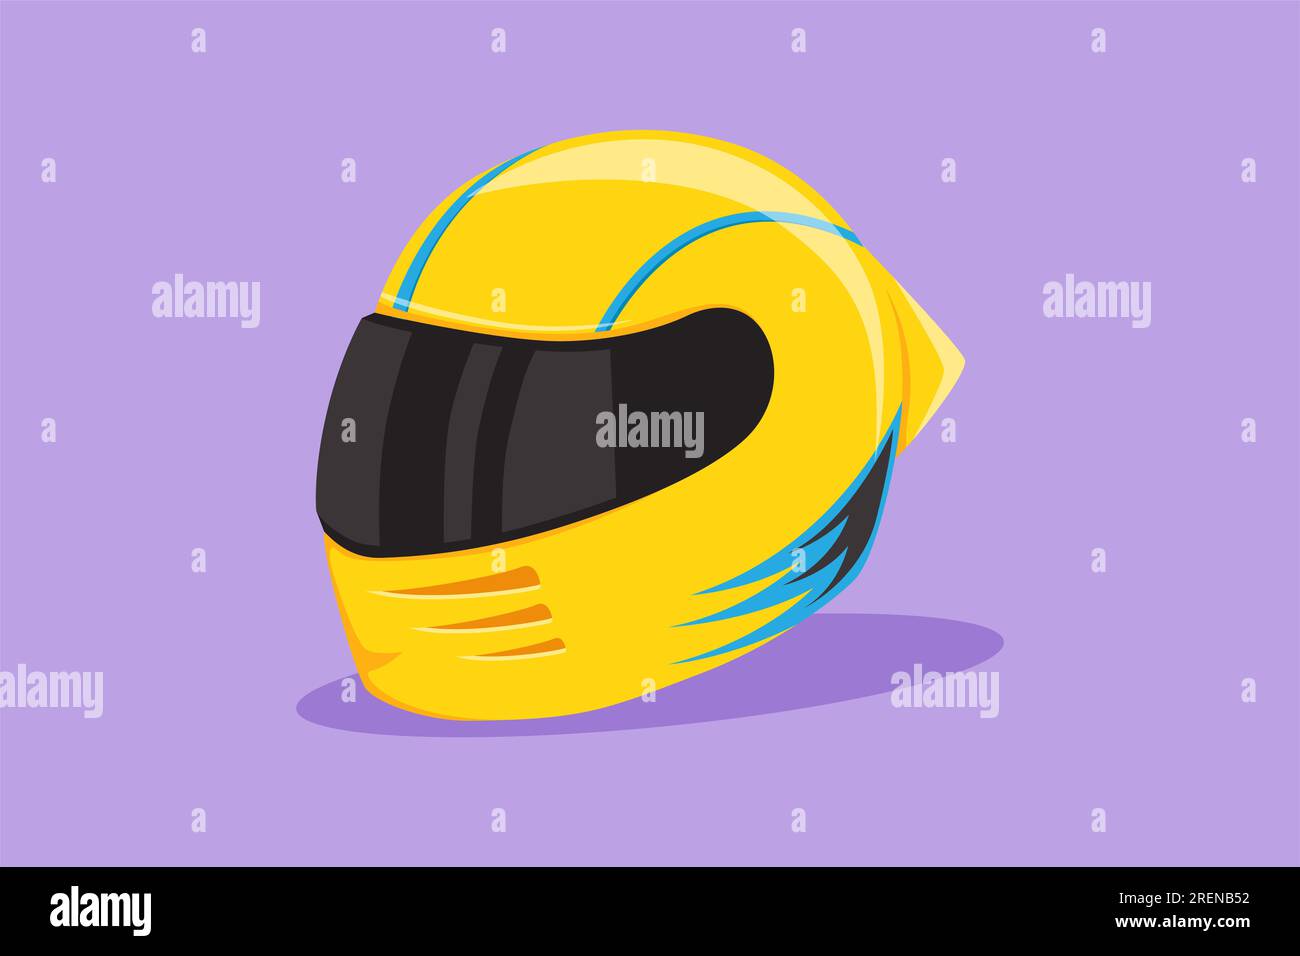 Motorrennen-Helm im flachen Grafikdesign mit geschlossenem Glasvisier. Für Auto- und Motorradsport, Rennsport, Motocross oder Bikerclub, Motorsport Compe Stockfoto